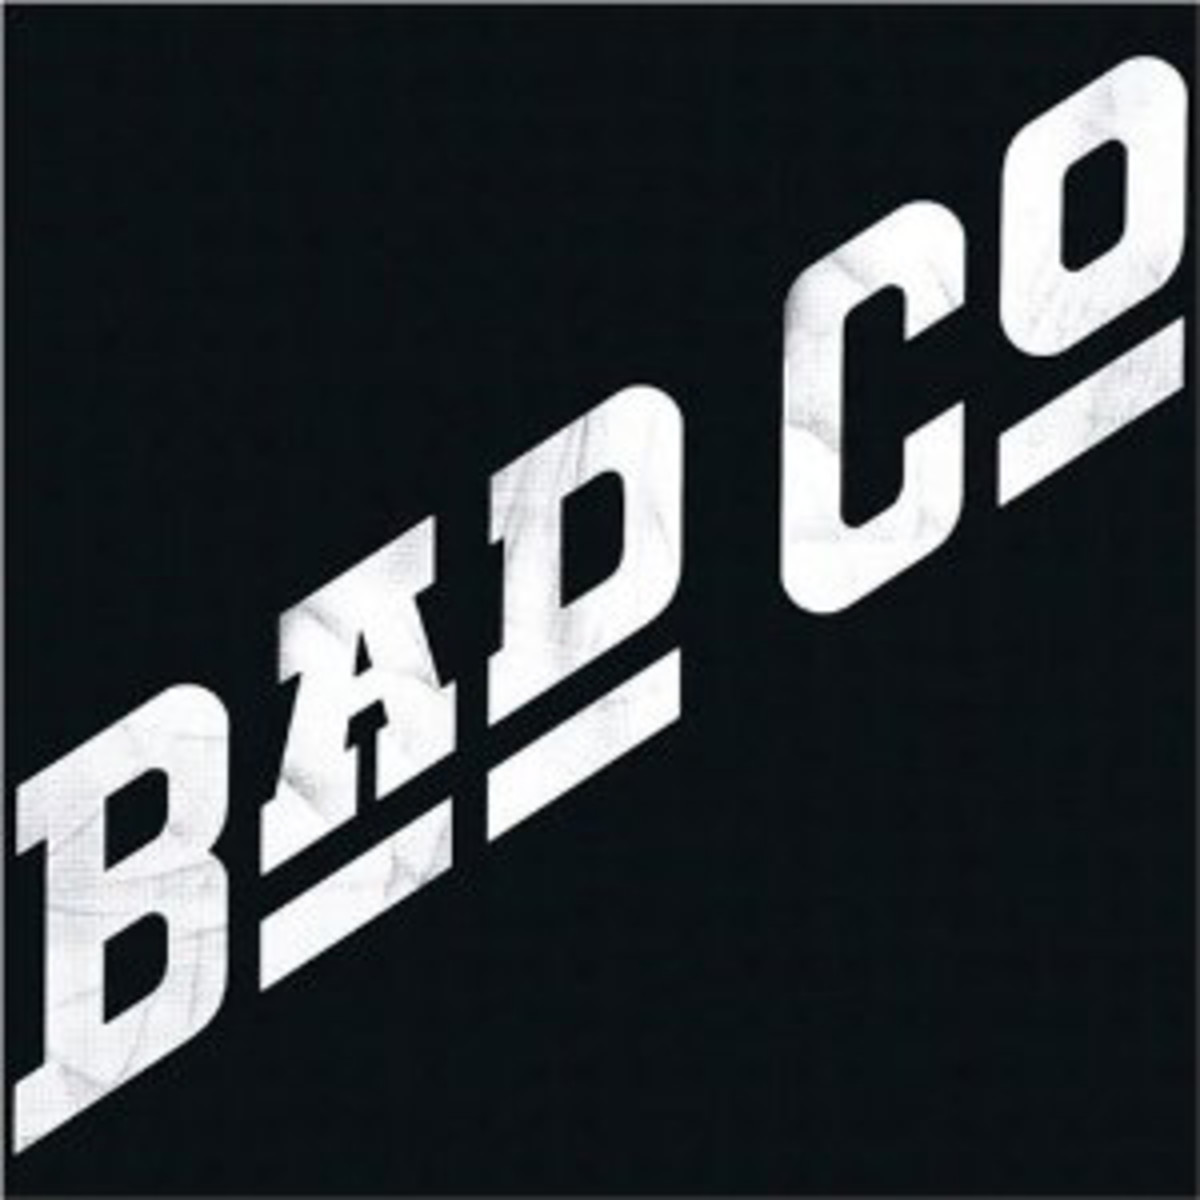 Bad_Company